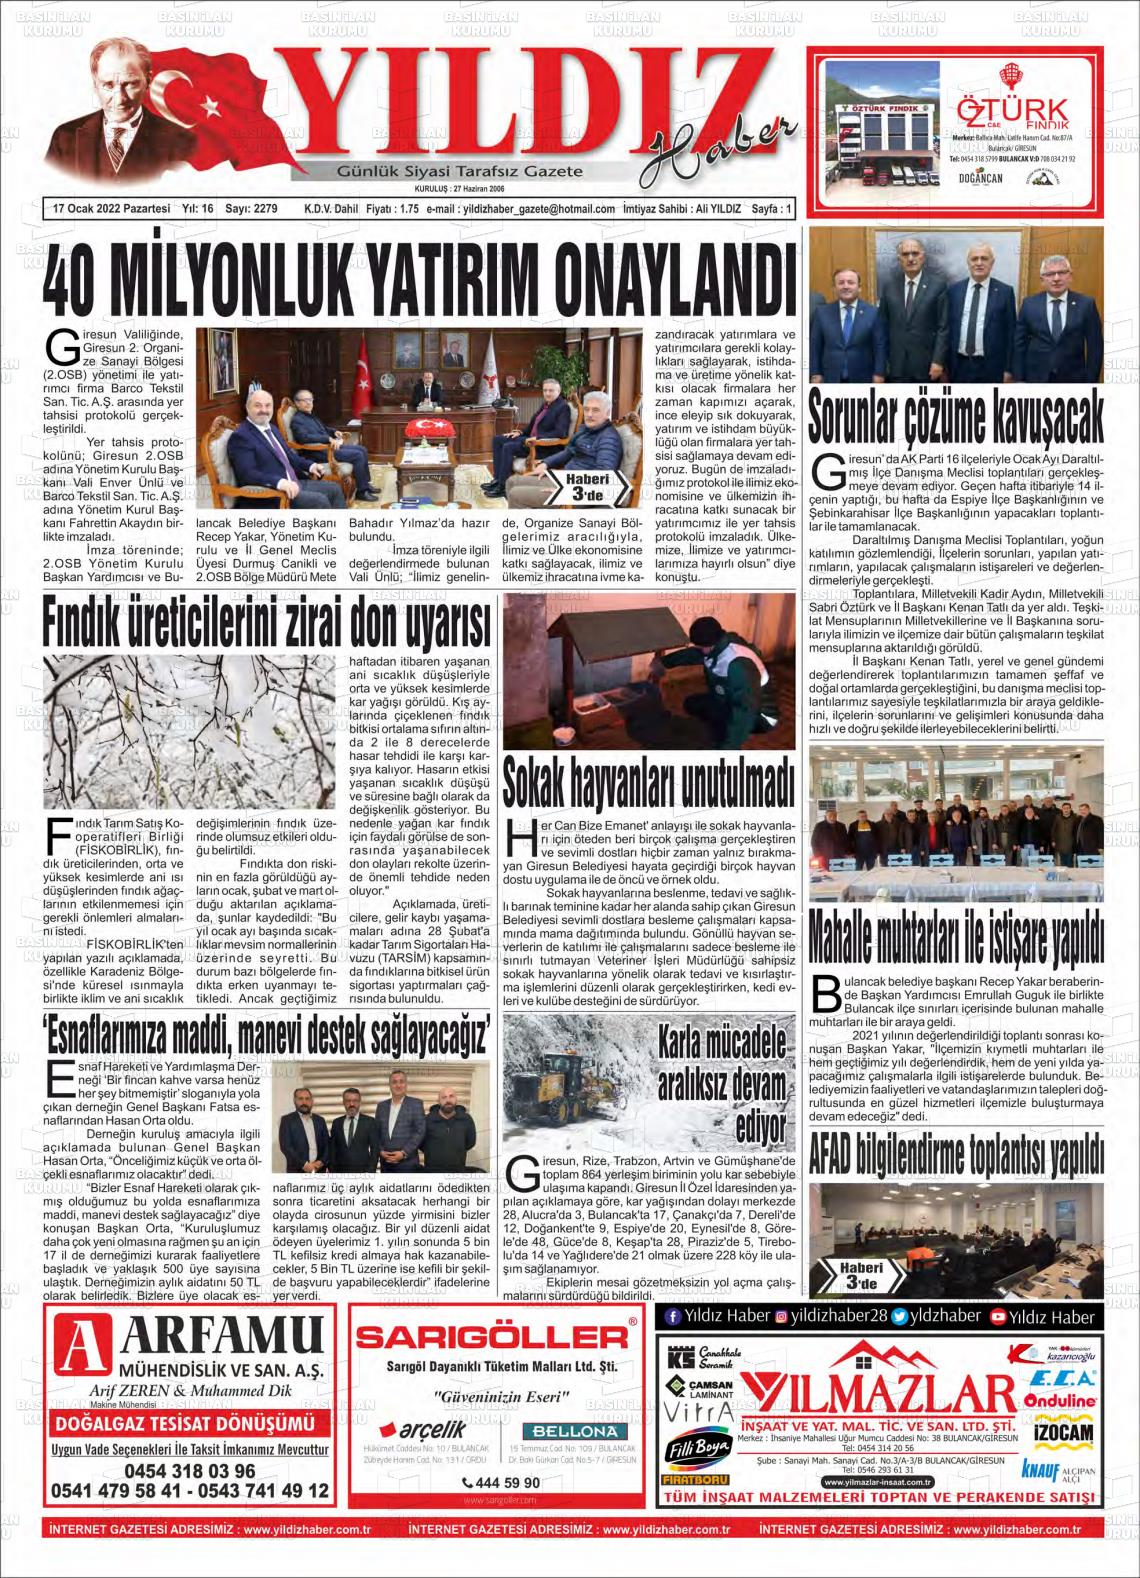 17 Ocak 2022 Yıldız Haber Gazete Manşeti